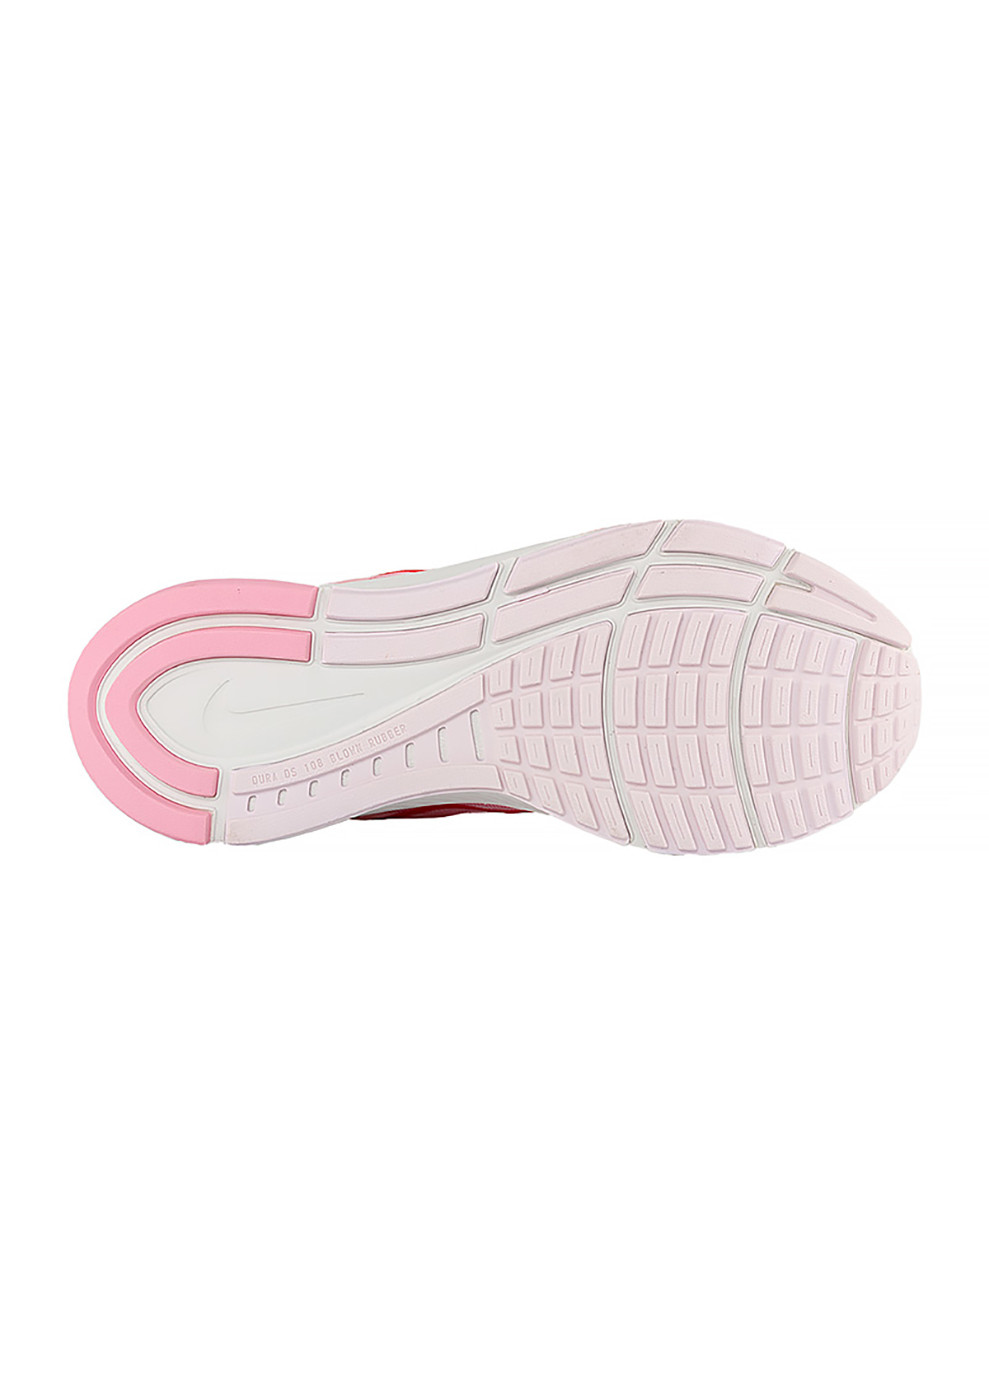 Розовые демисезонные женские кроссовки w air zoom structure 24 розовый Nike